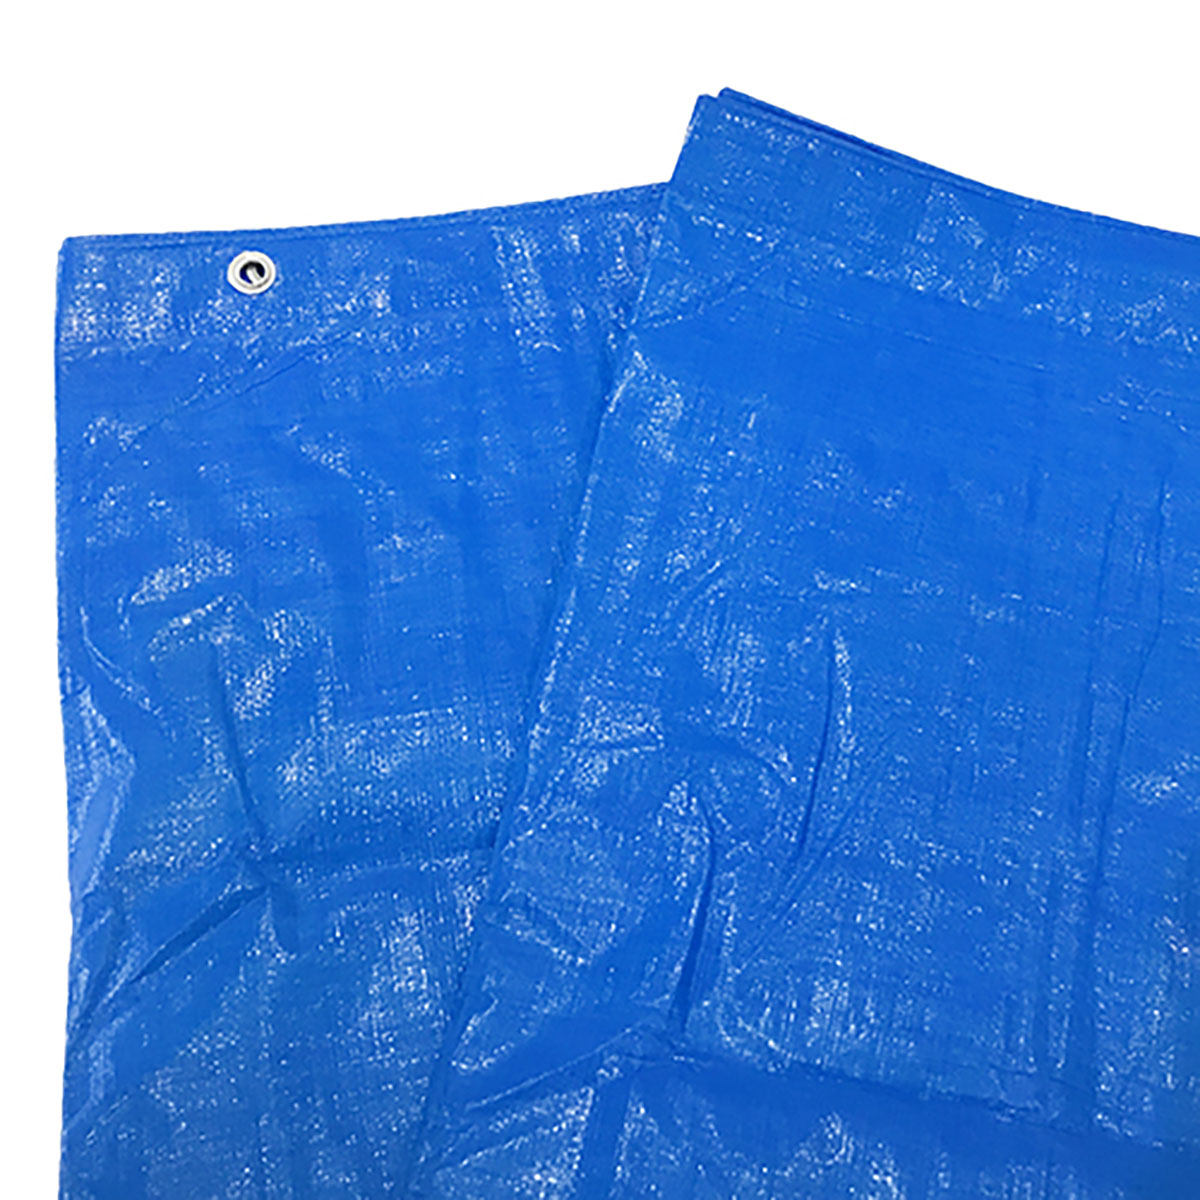 ブルーシート 巾約5.2×長さ約7.0m #3000